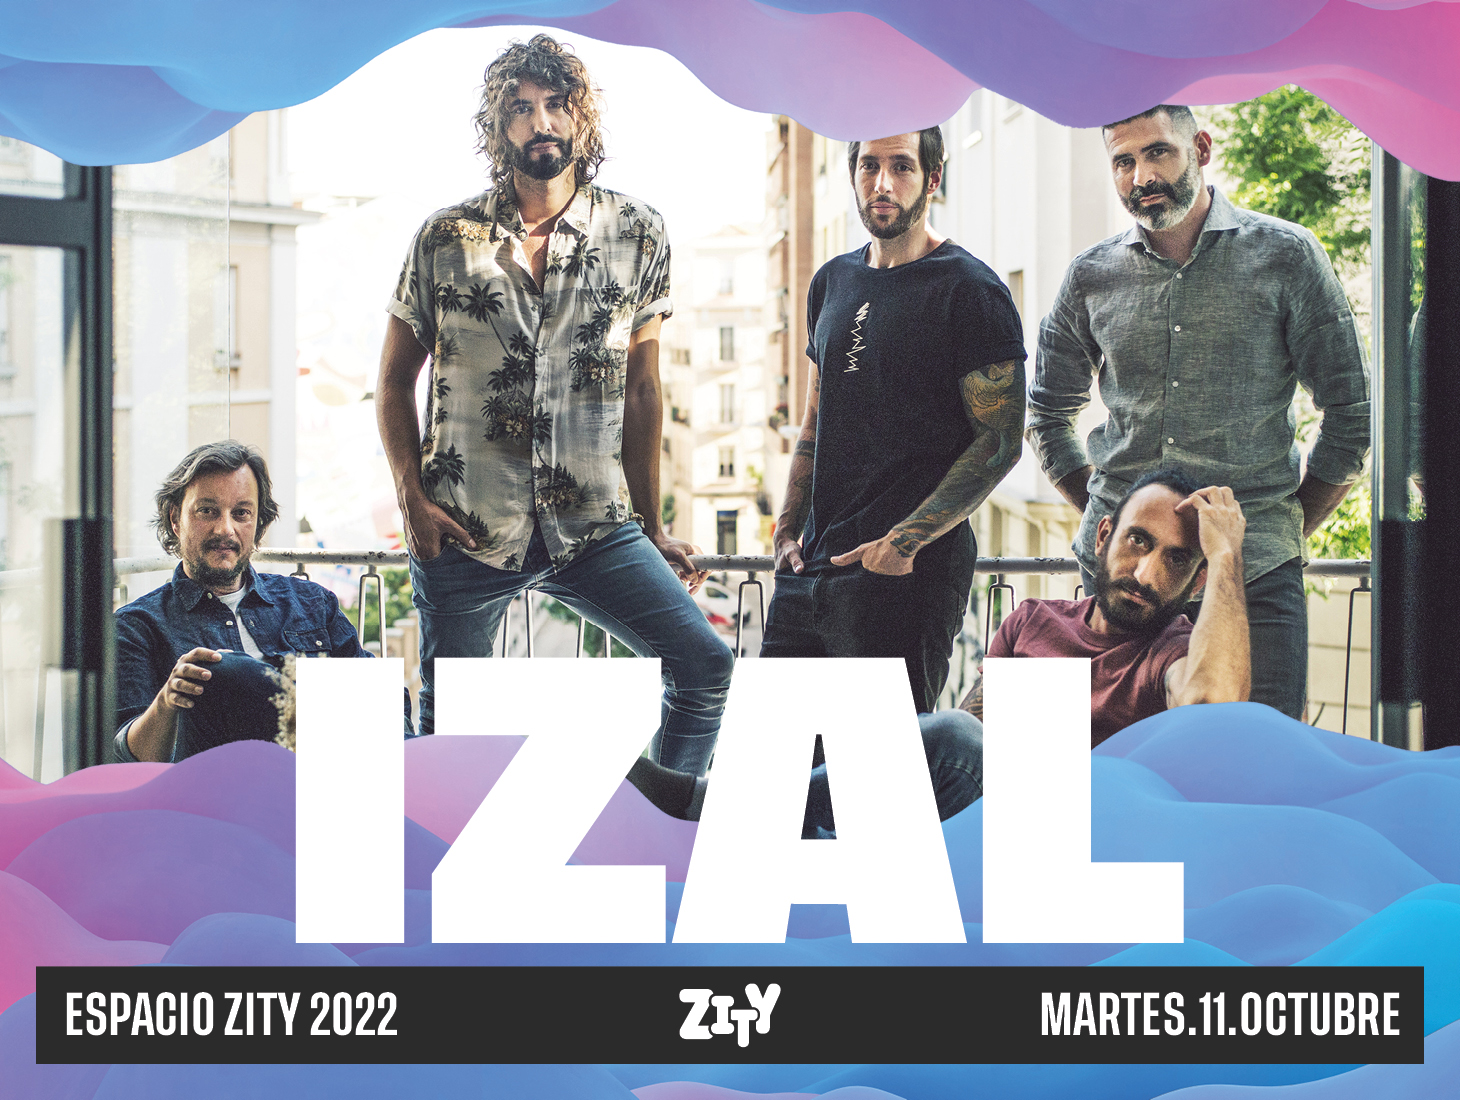 Grupo Izal concierto de despedida en Zaragoza Espacio Zity Pilares 2022